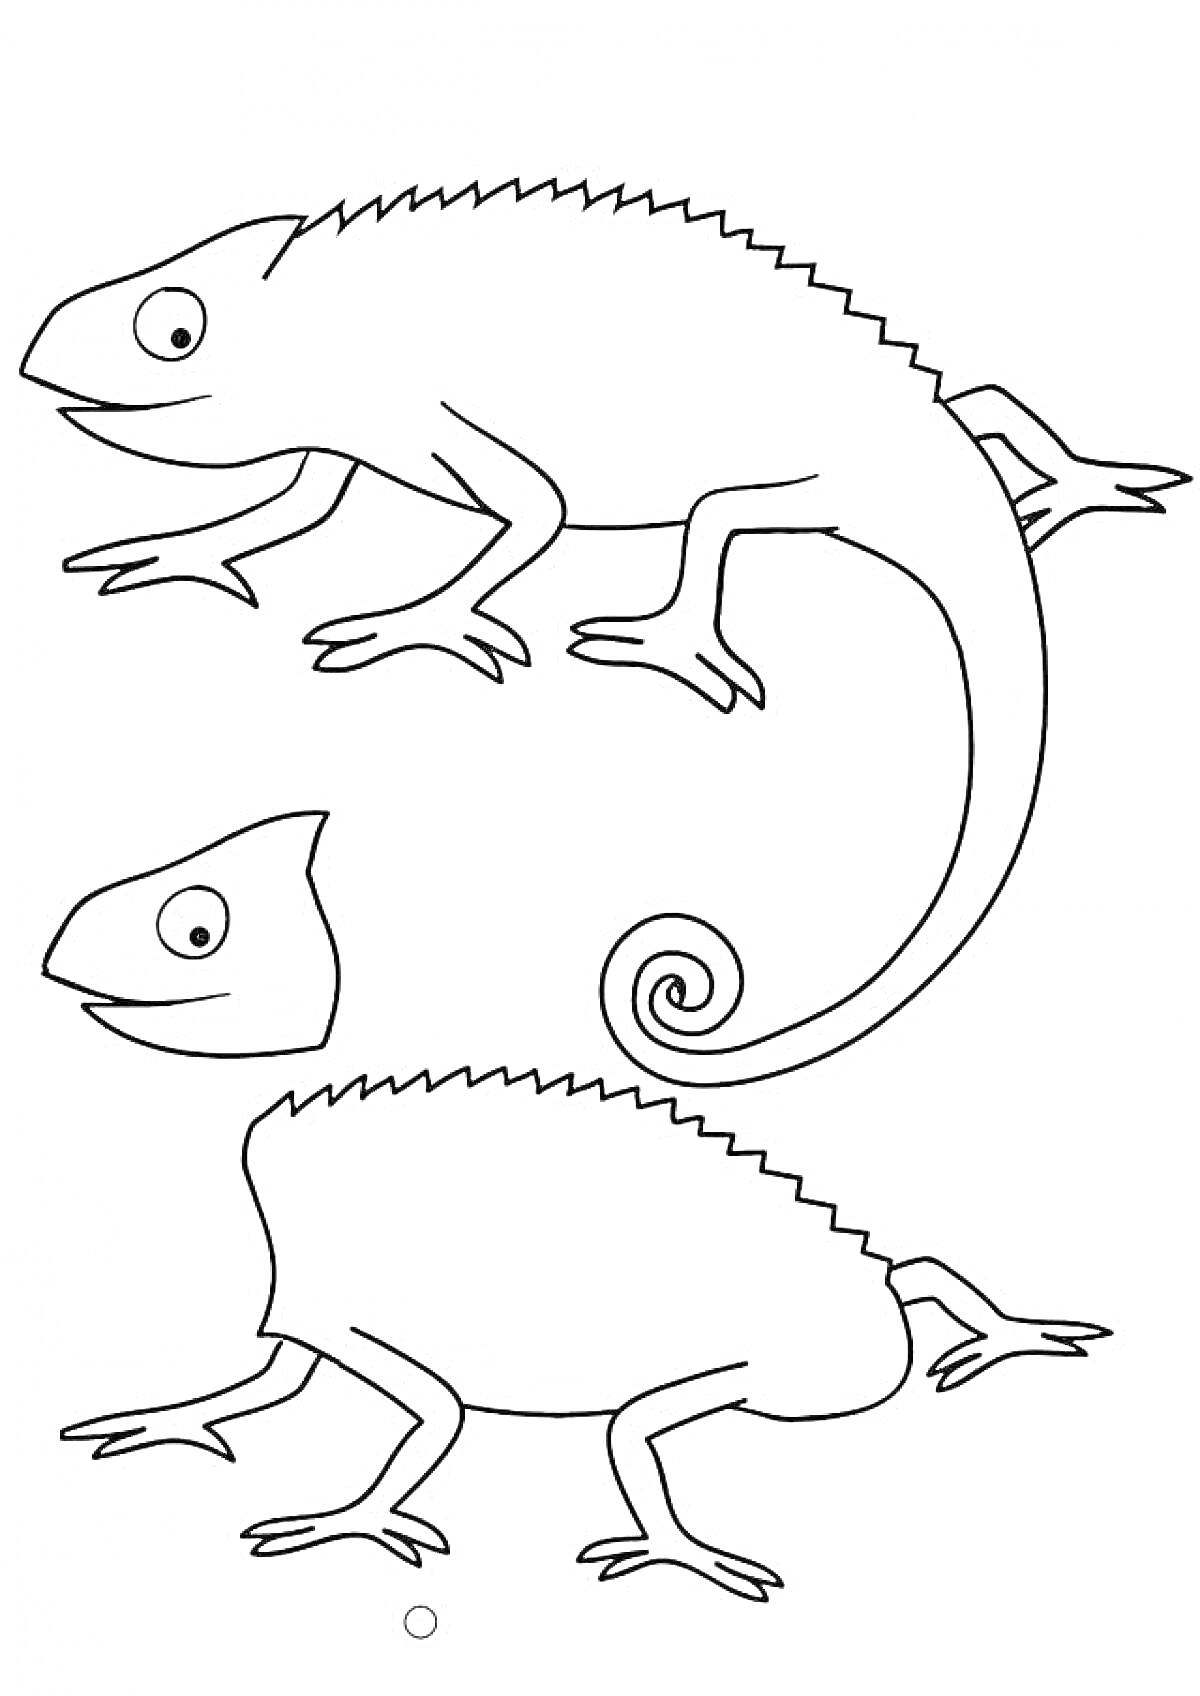 Раскраска Два хамелеона - один с прямым хвостом, другой с закрученным хвостом